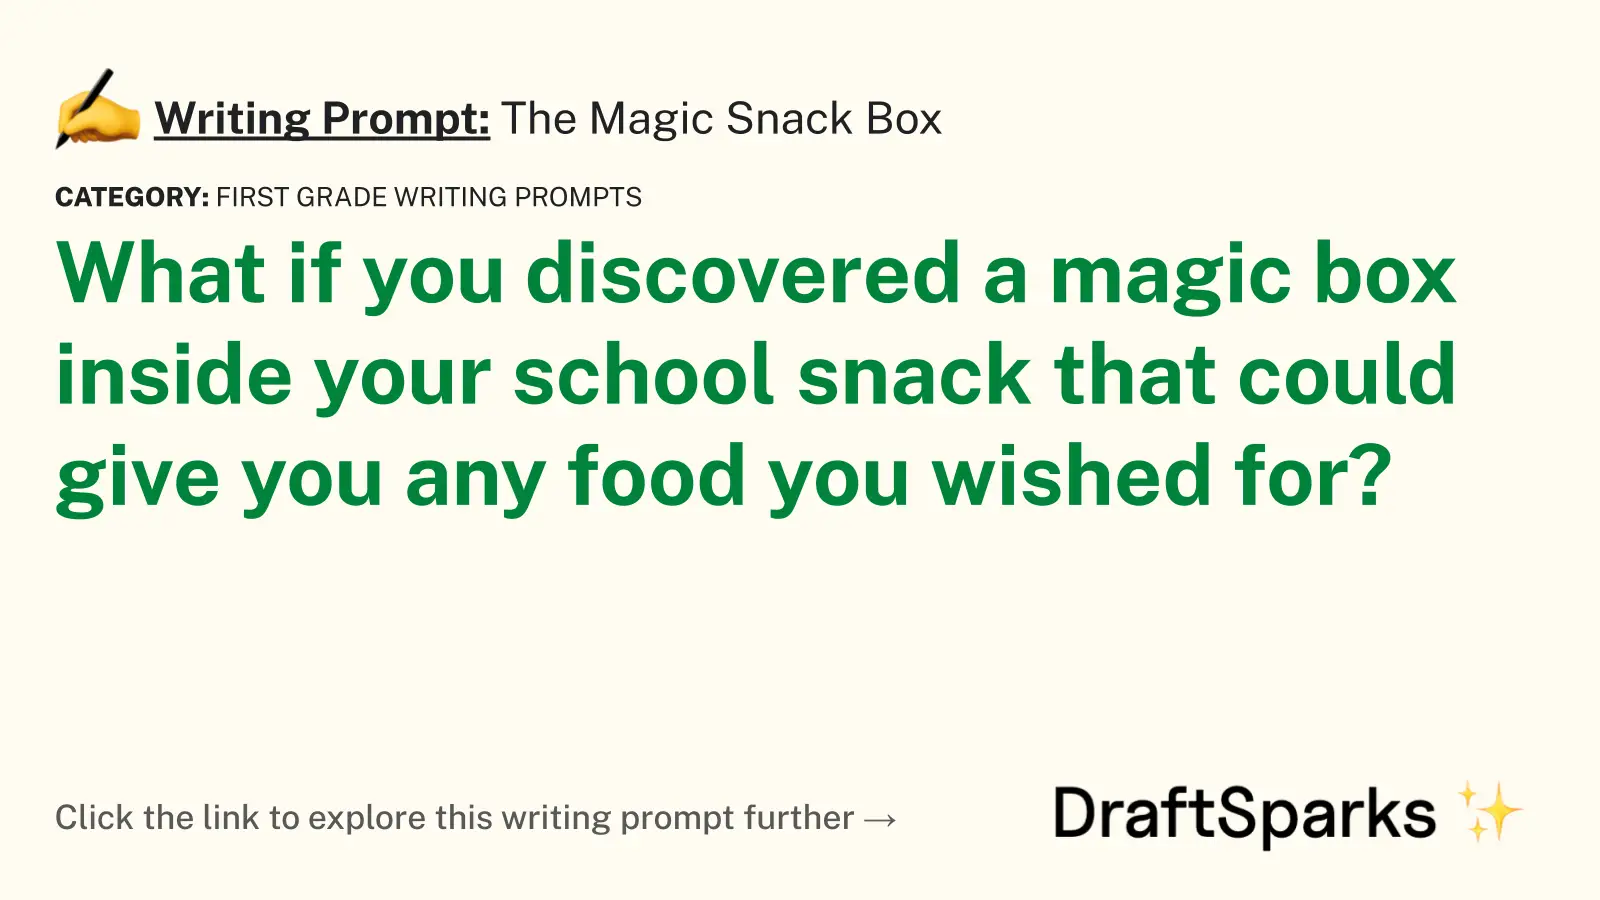 The Magic Snack Box